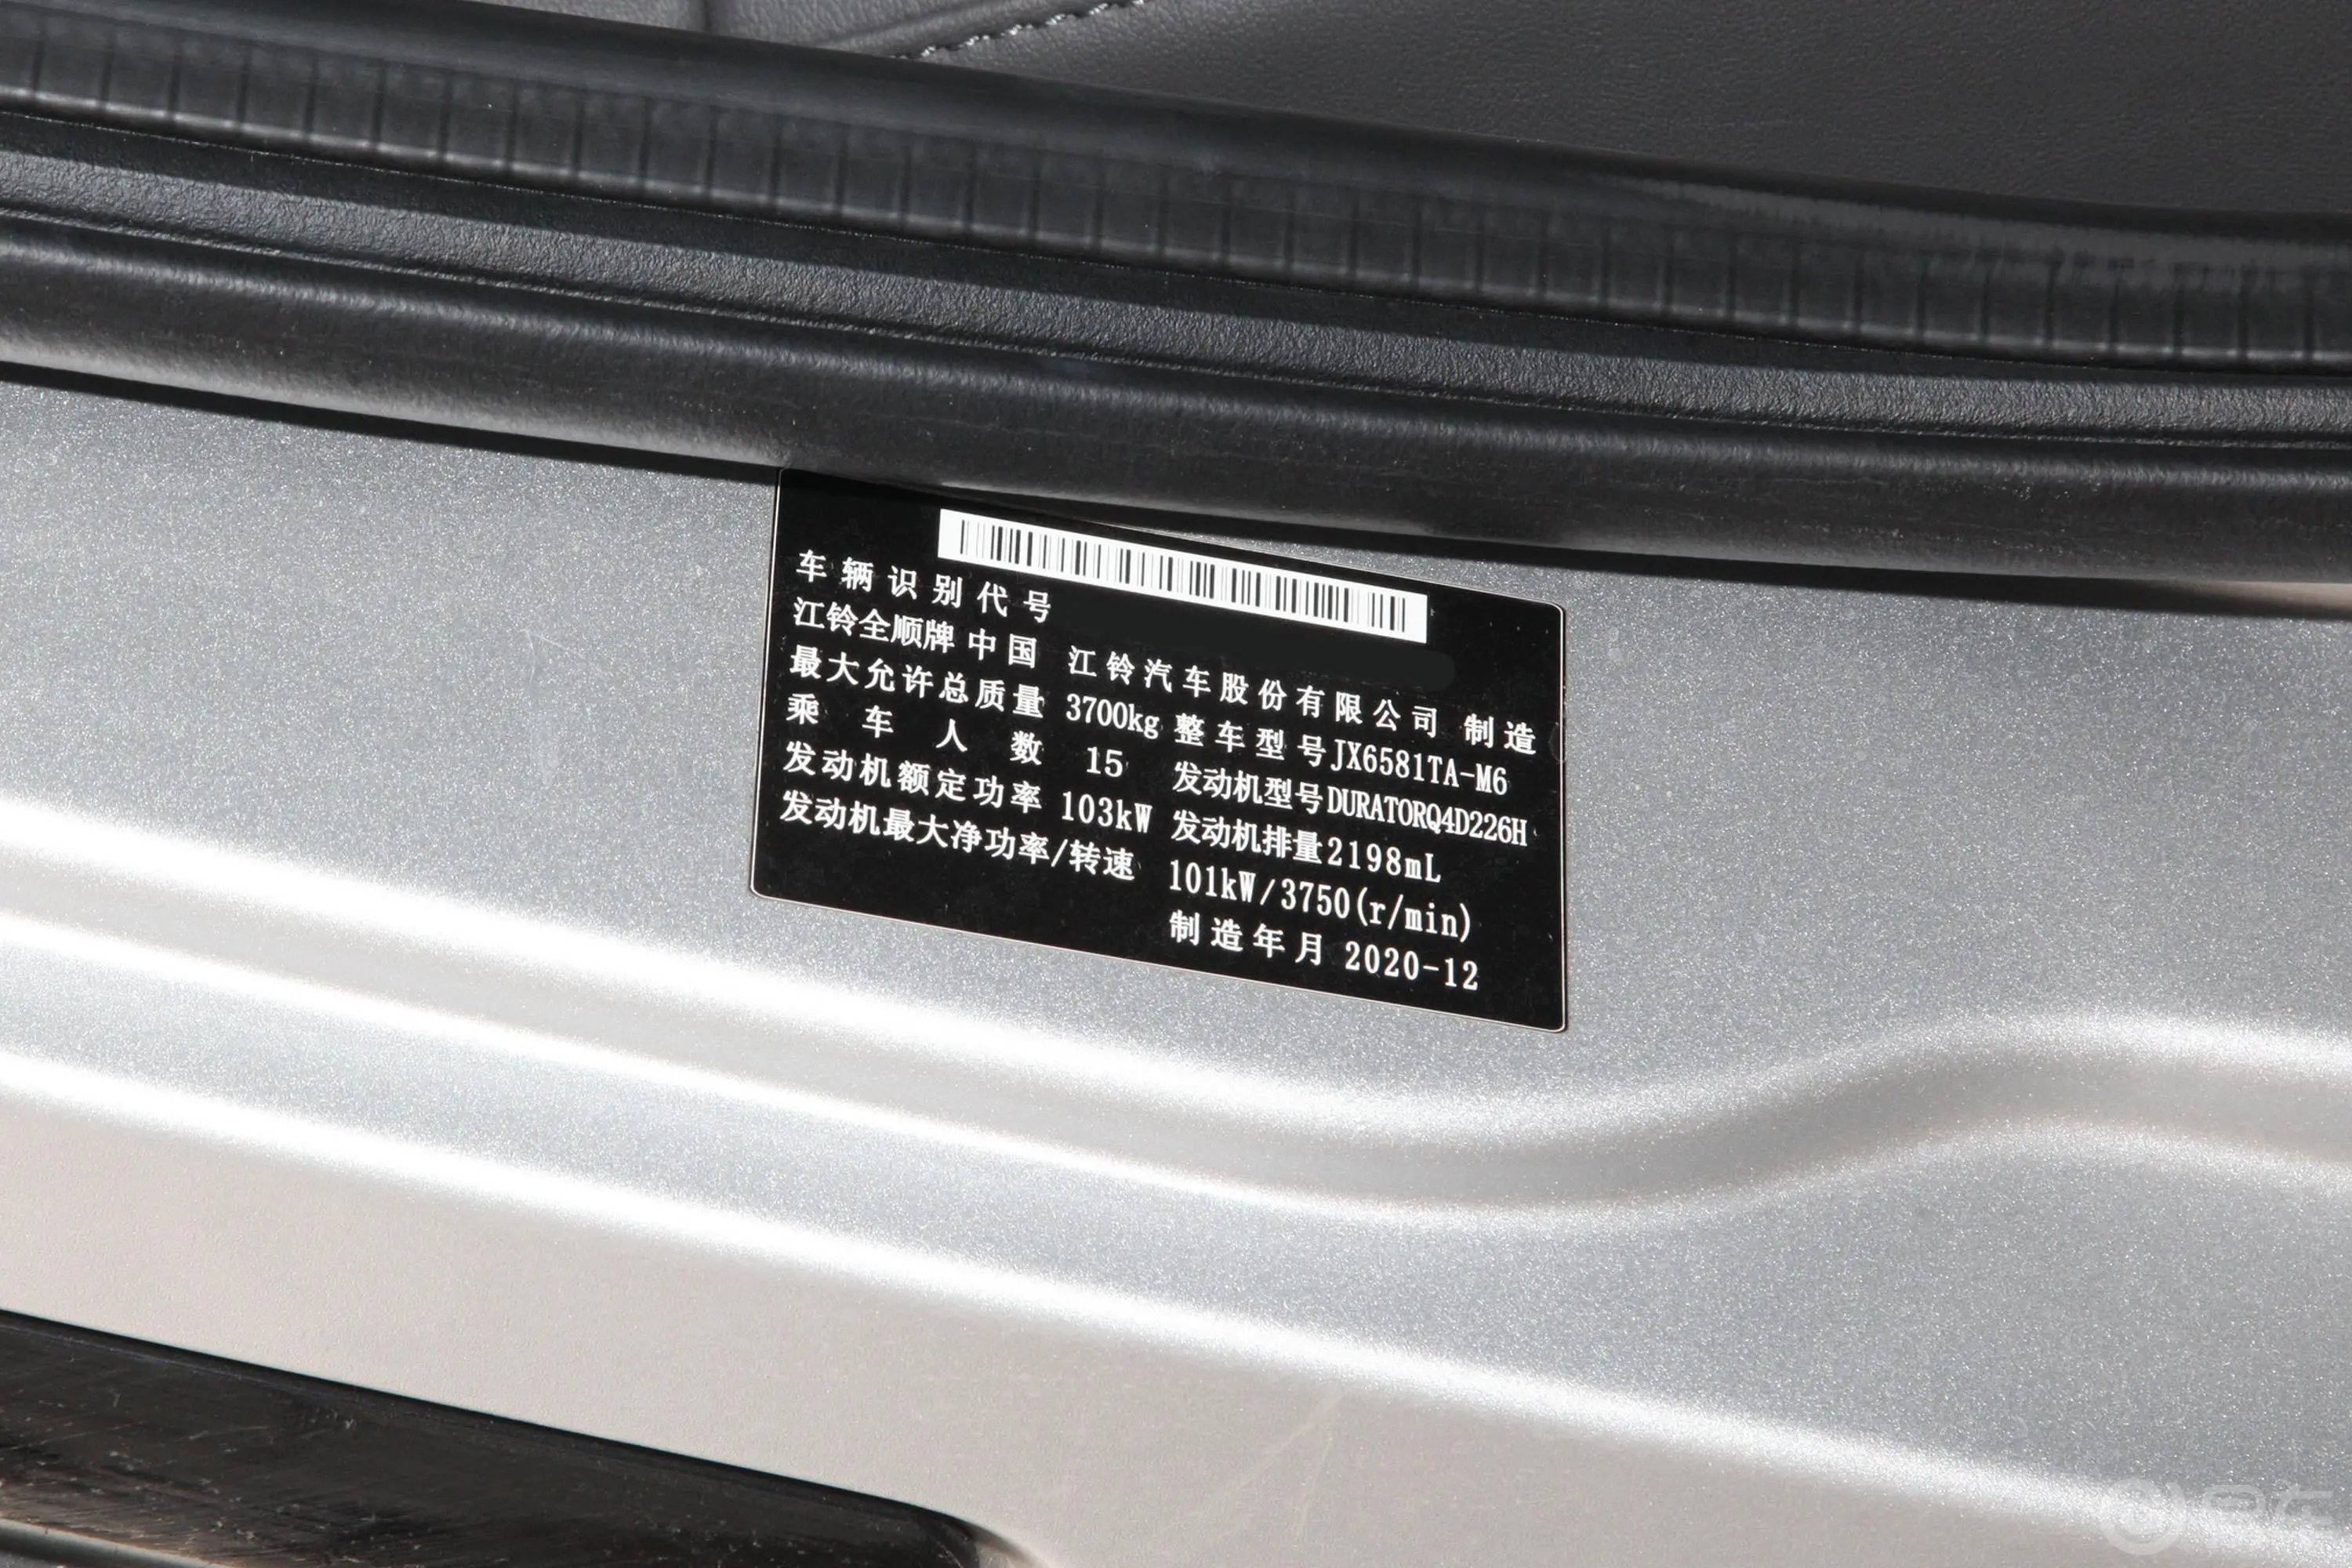 新世代全顺Pro 2.2T AMT 长轴中顶 豪华版客车(包) 15座 柴油 国VI车辆信息铭牌